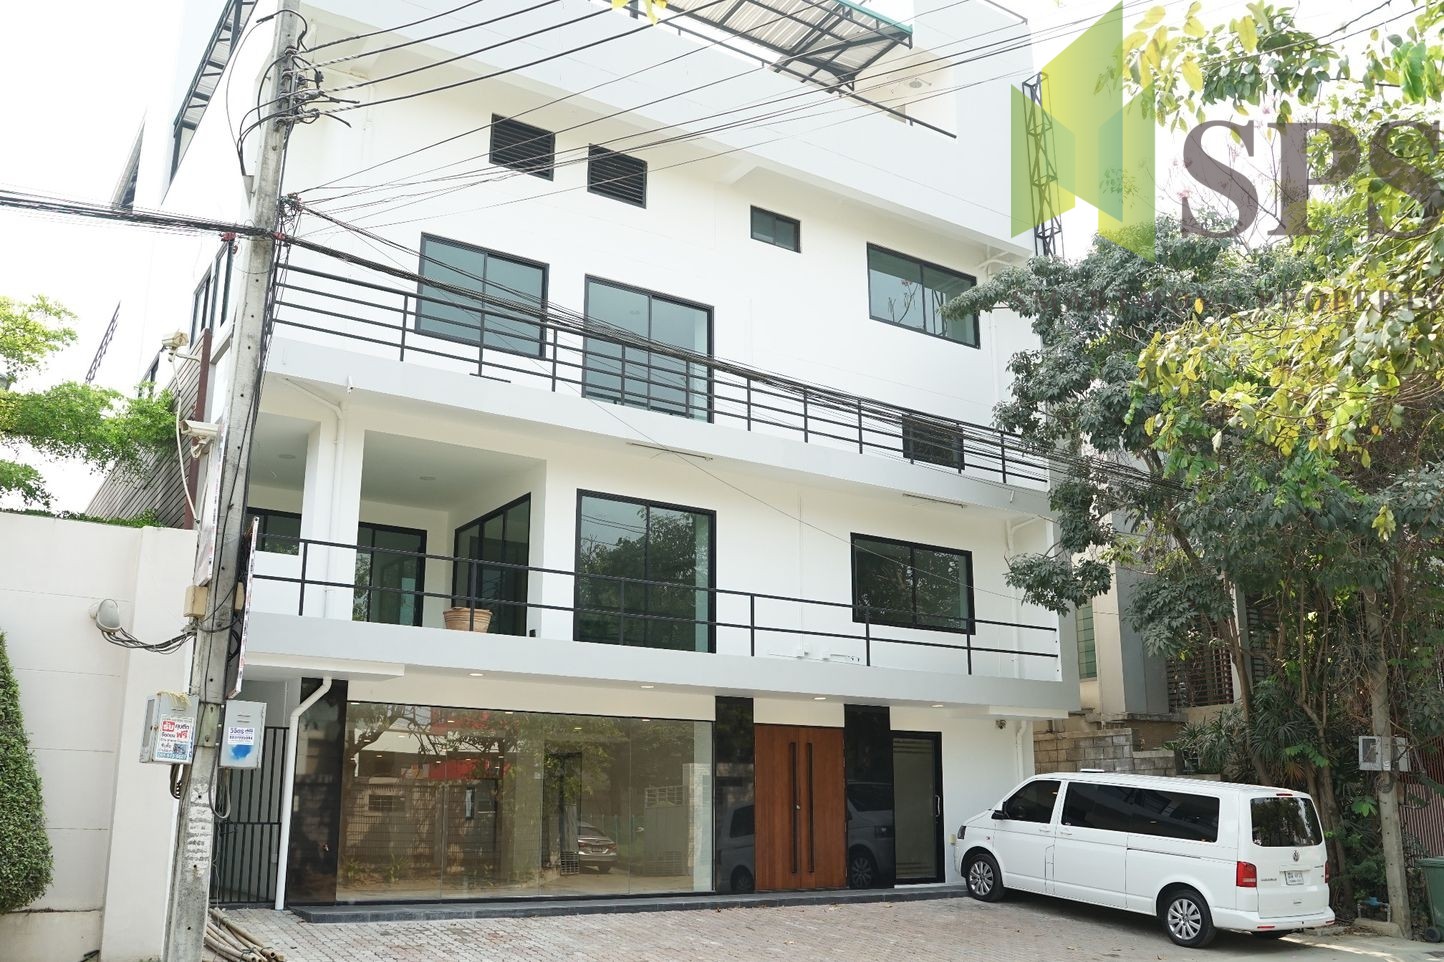 อาคารสำนักงานให้เช่าใกล้ห้างพาราไดซ์ศรีนครินทร์ For Rent Office building near Paradise park Srinakarin ( SPSPE353)